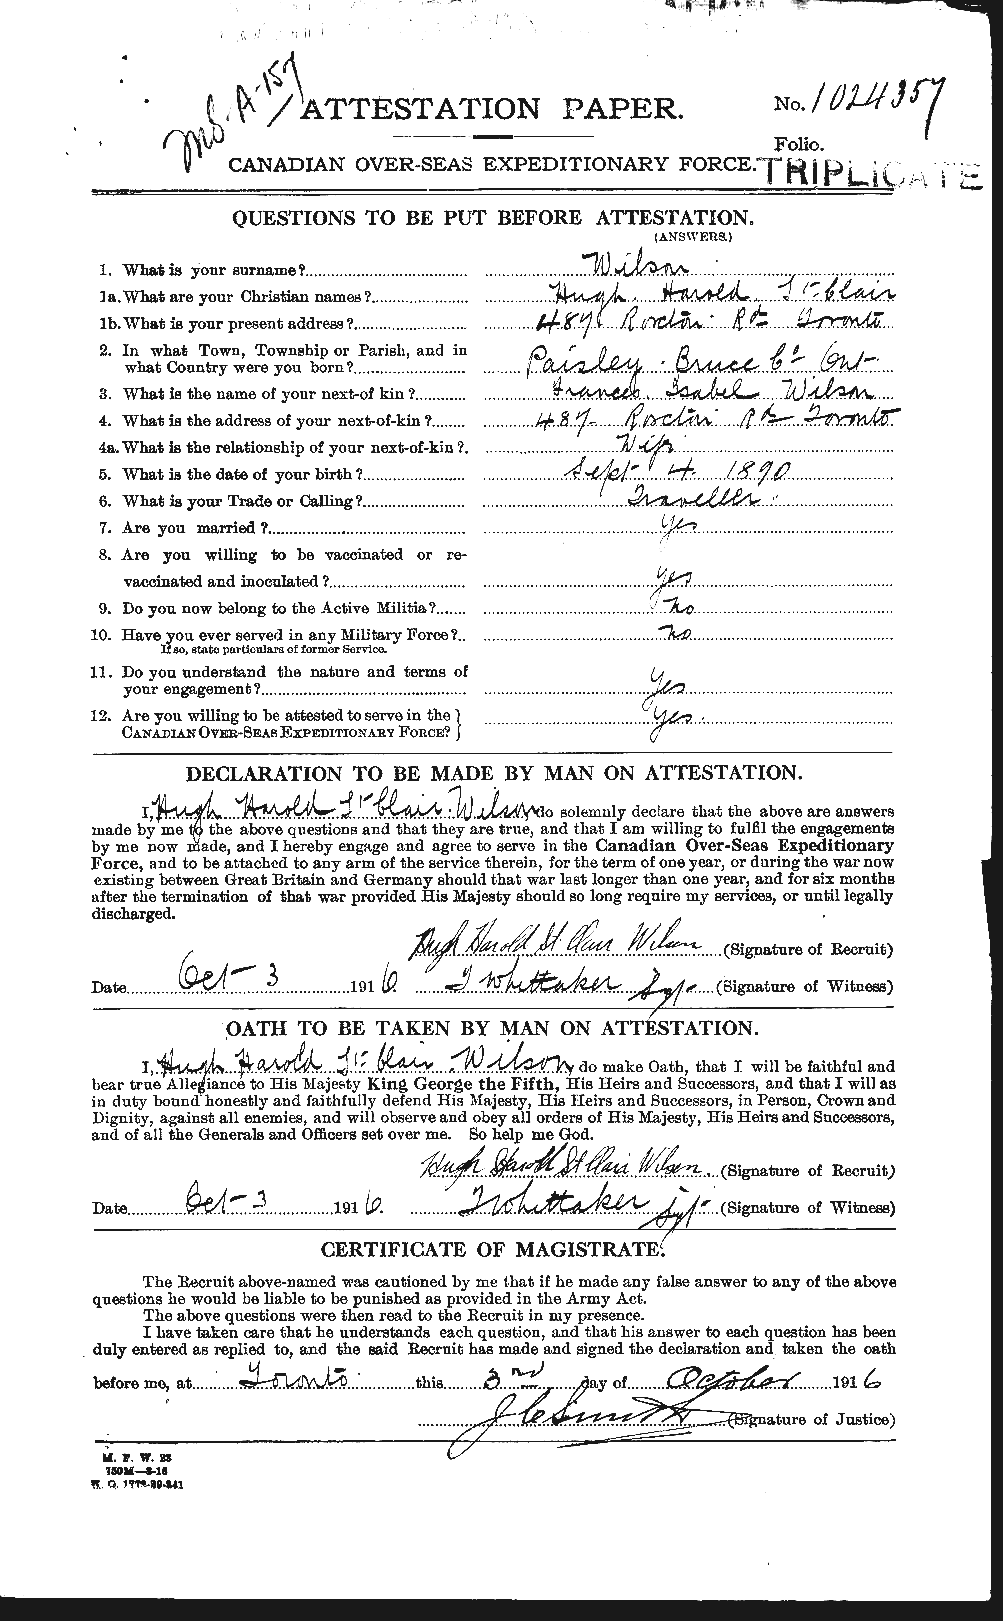 Dossiers du Personnel de la Première Guerre mondiale - CEC 679616a